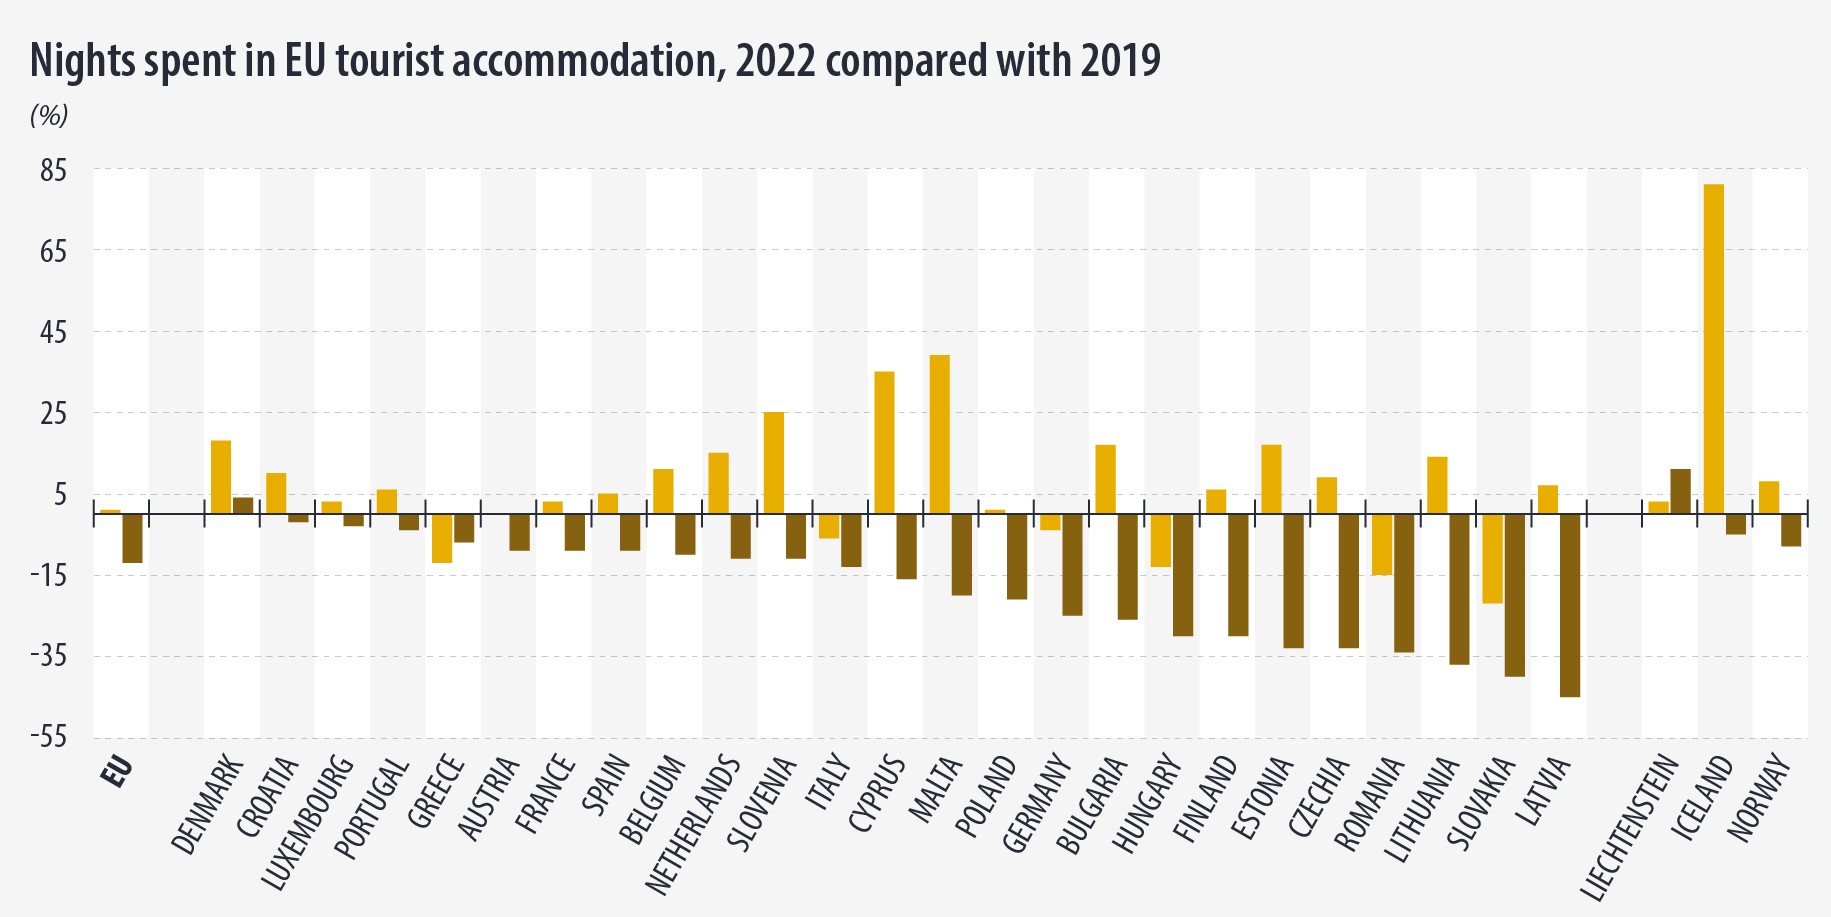 Ночевки в туристических отелях стран Евросоюза 2022 по сравнению с 2019 T Eurostat